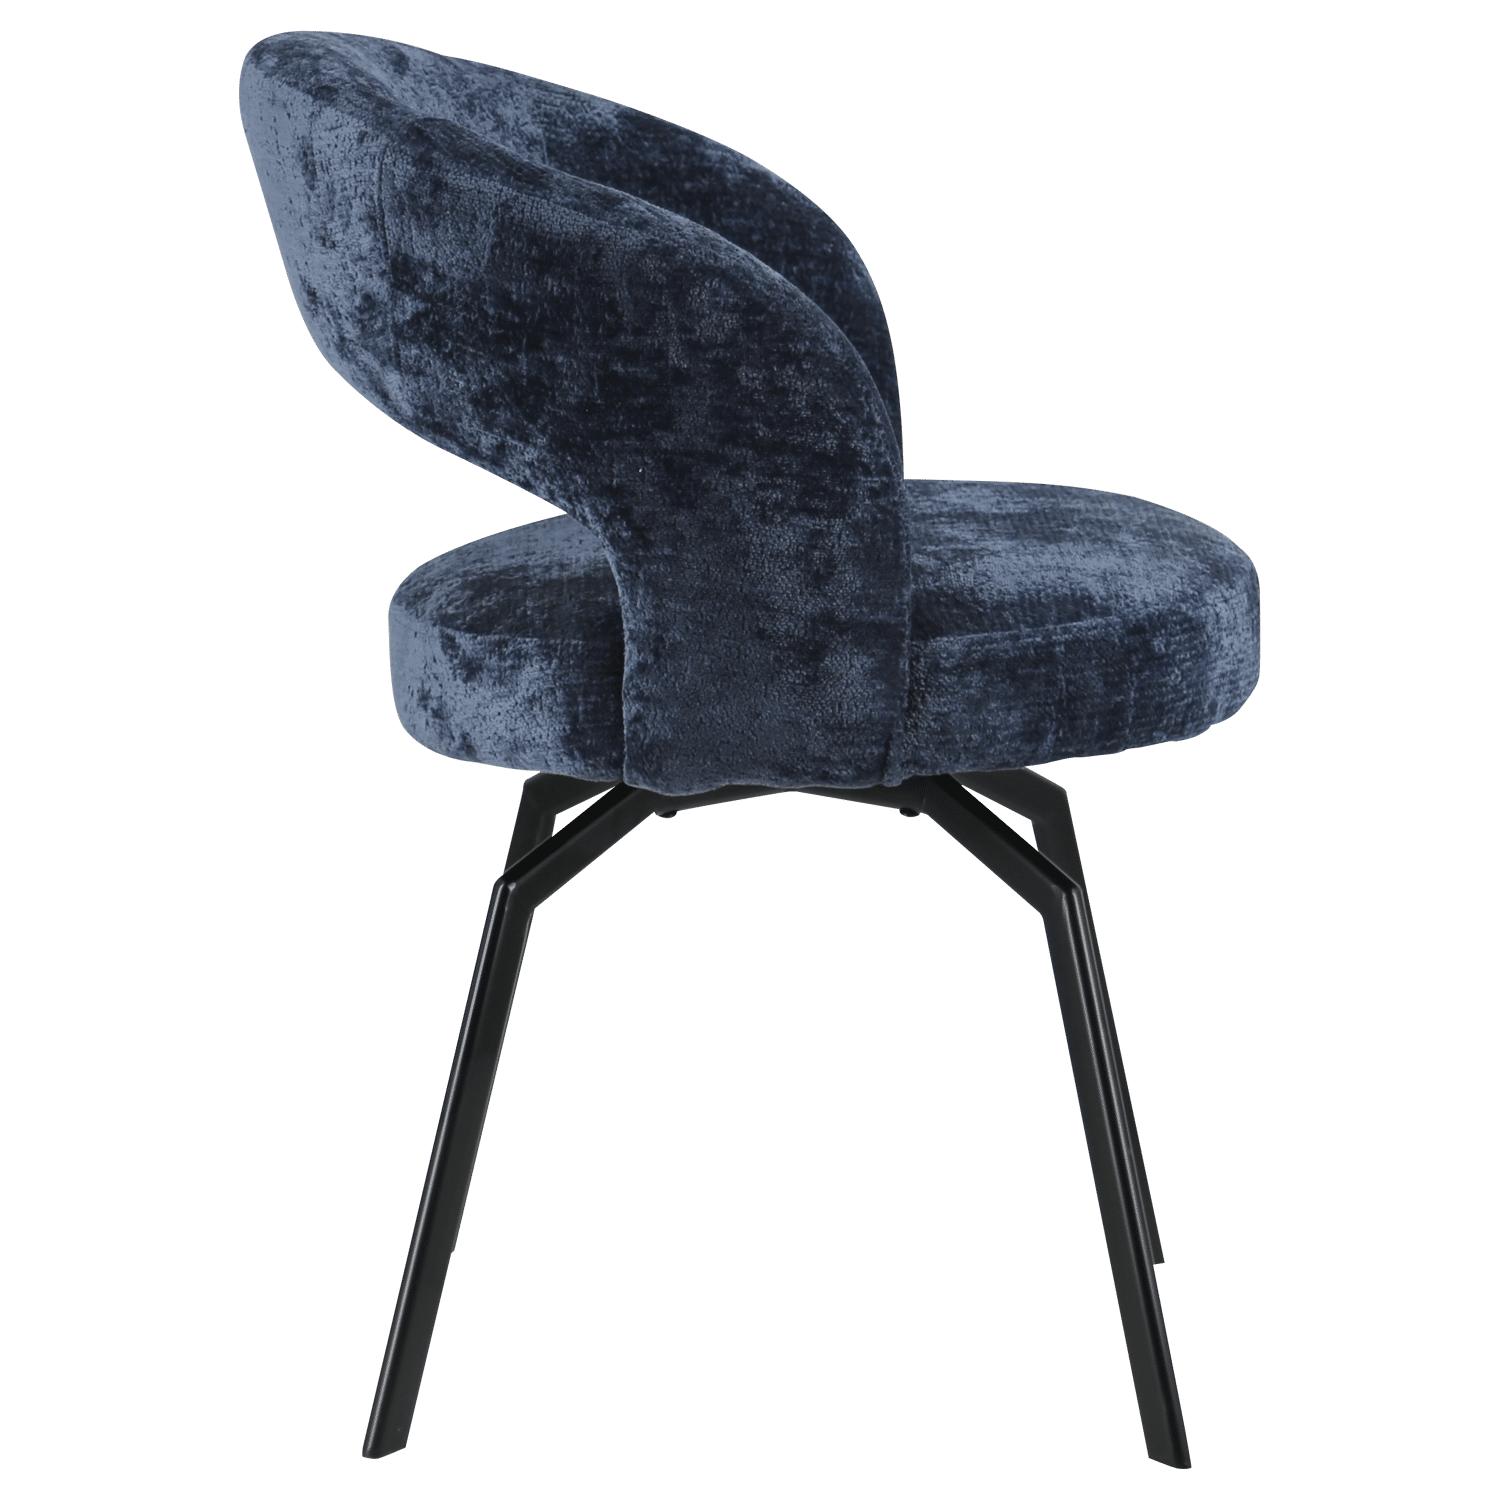 Cadeira de chenille azul escura EHBA